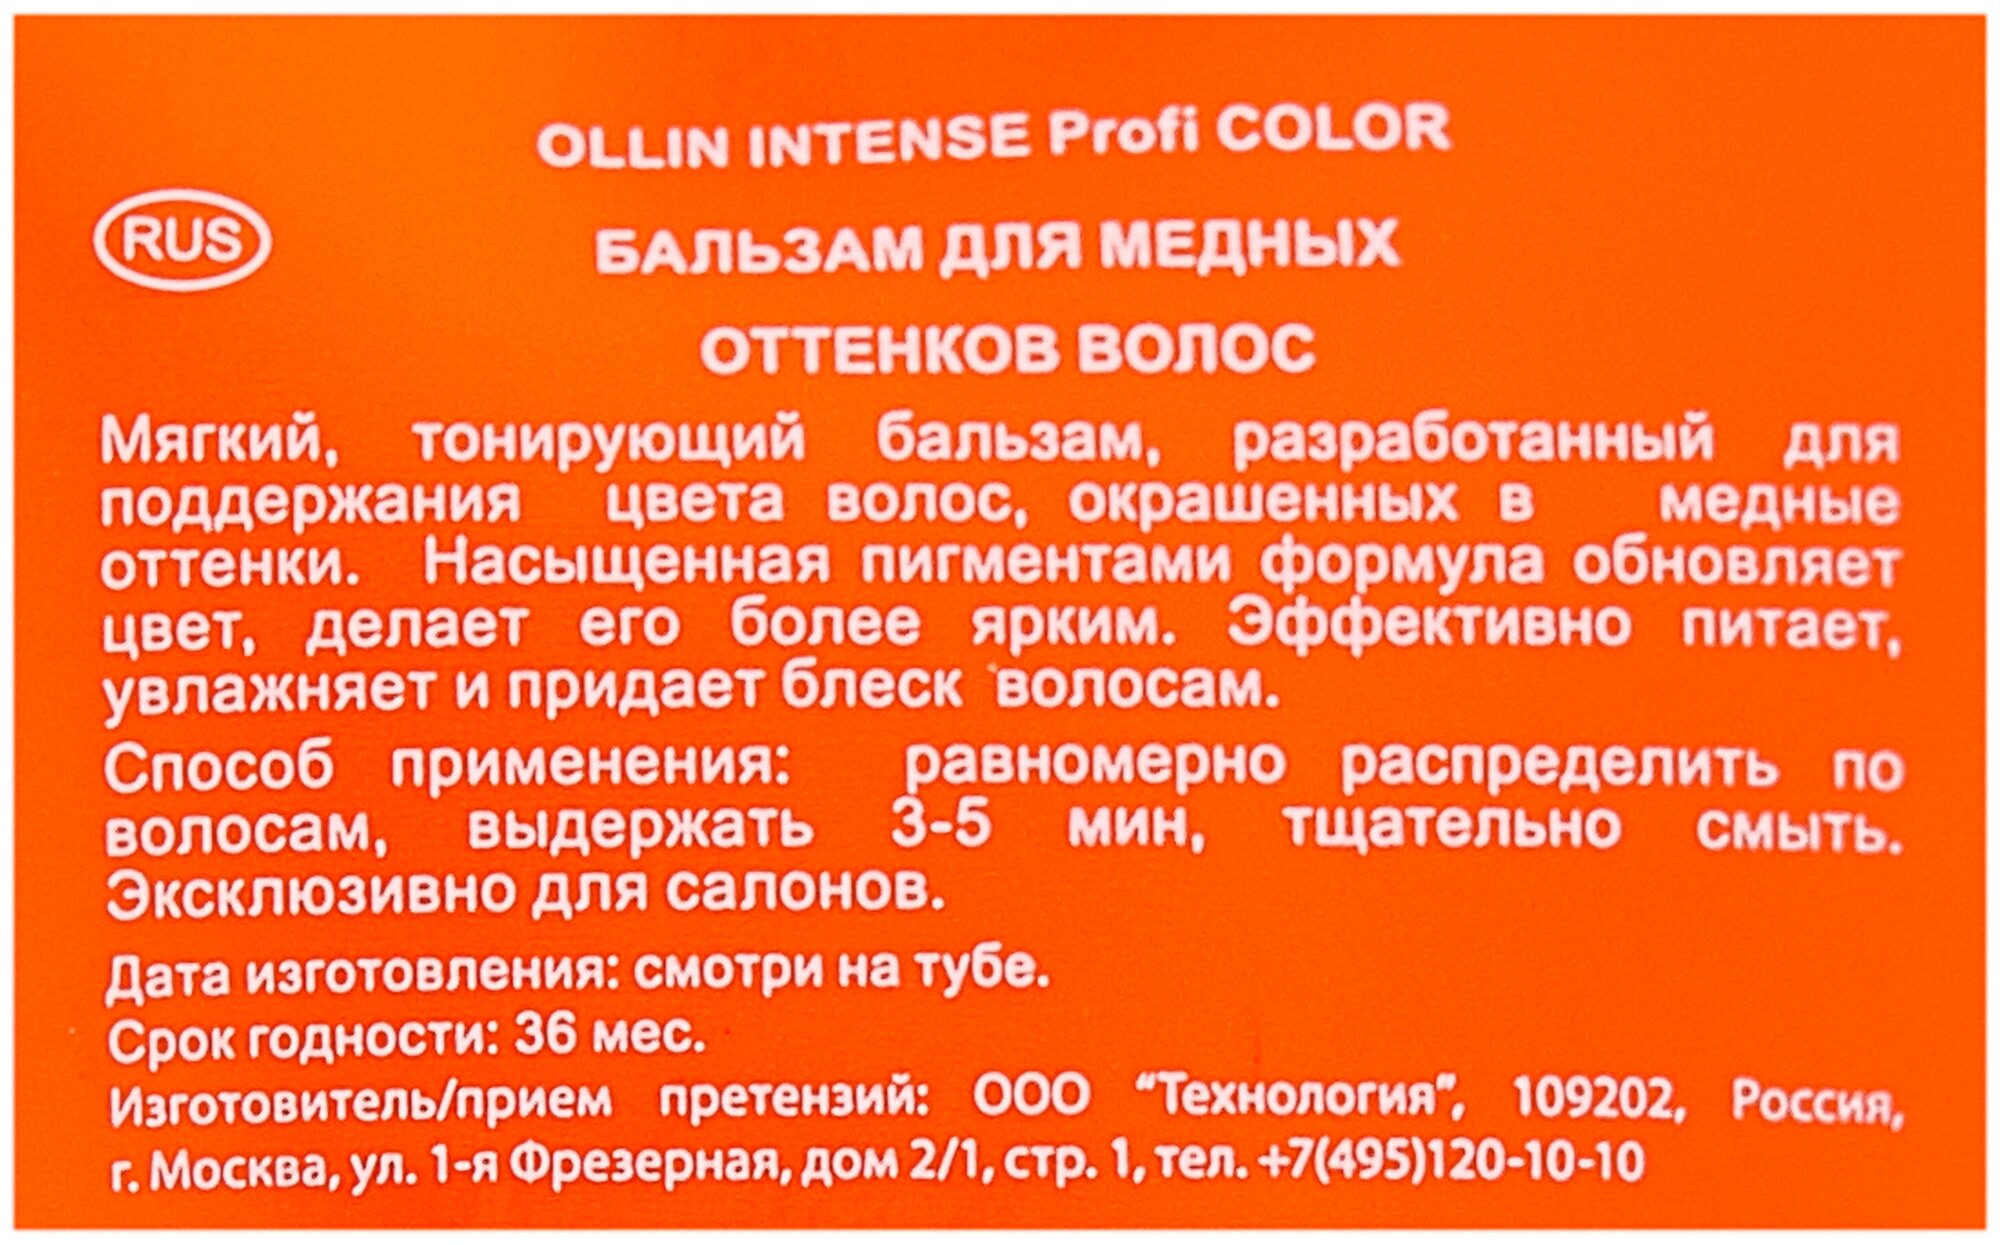 Ollin, Бальзам для медных оттенков волос INTENSE Profi COLOR, 200 мл